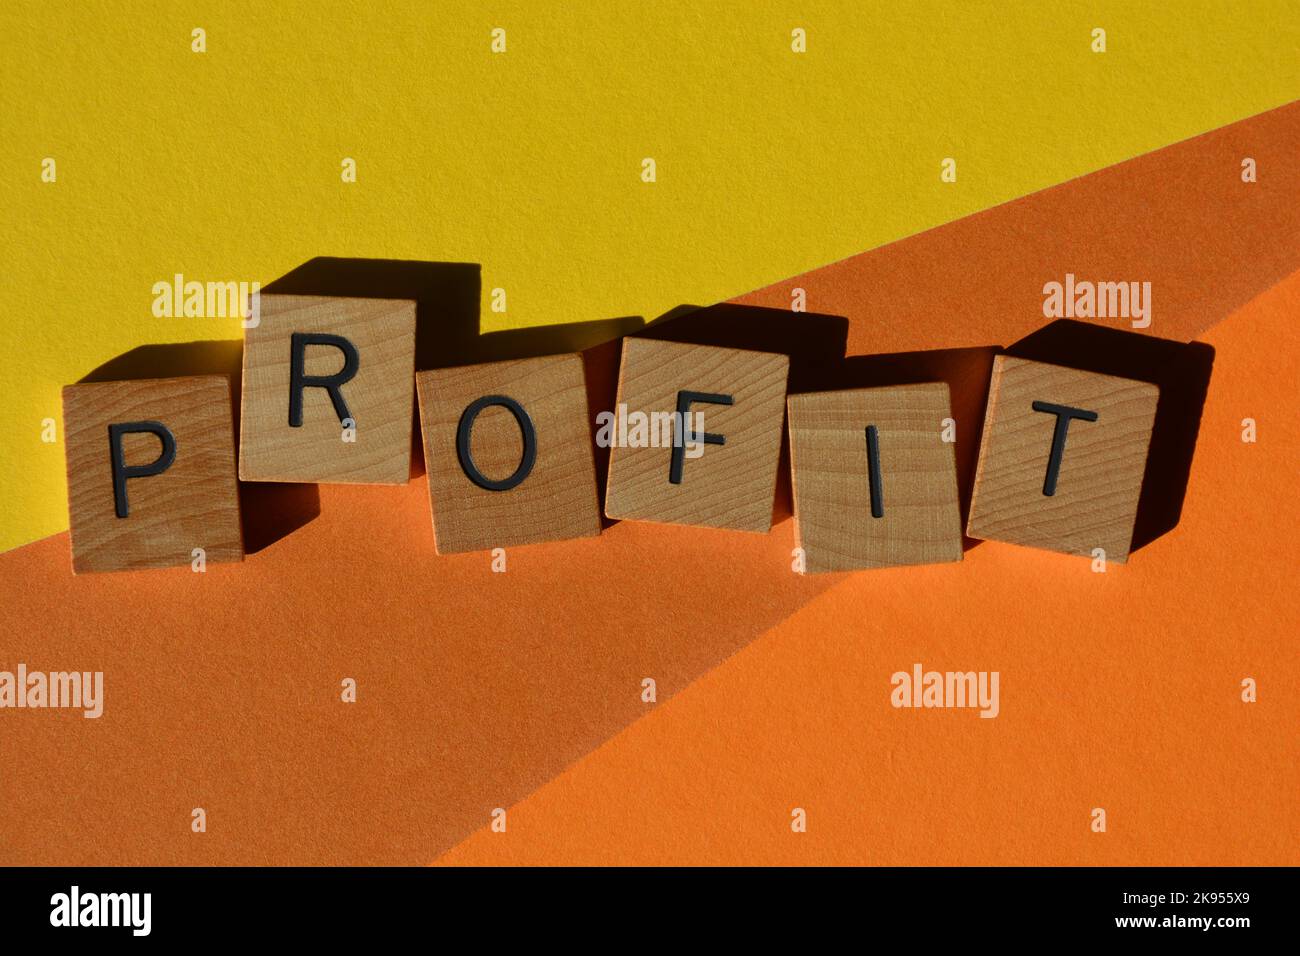 Profit, Wort in Holzbuchstaben isoliert auf orangefarbenem und gelbem Hintergrund Stockfoto